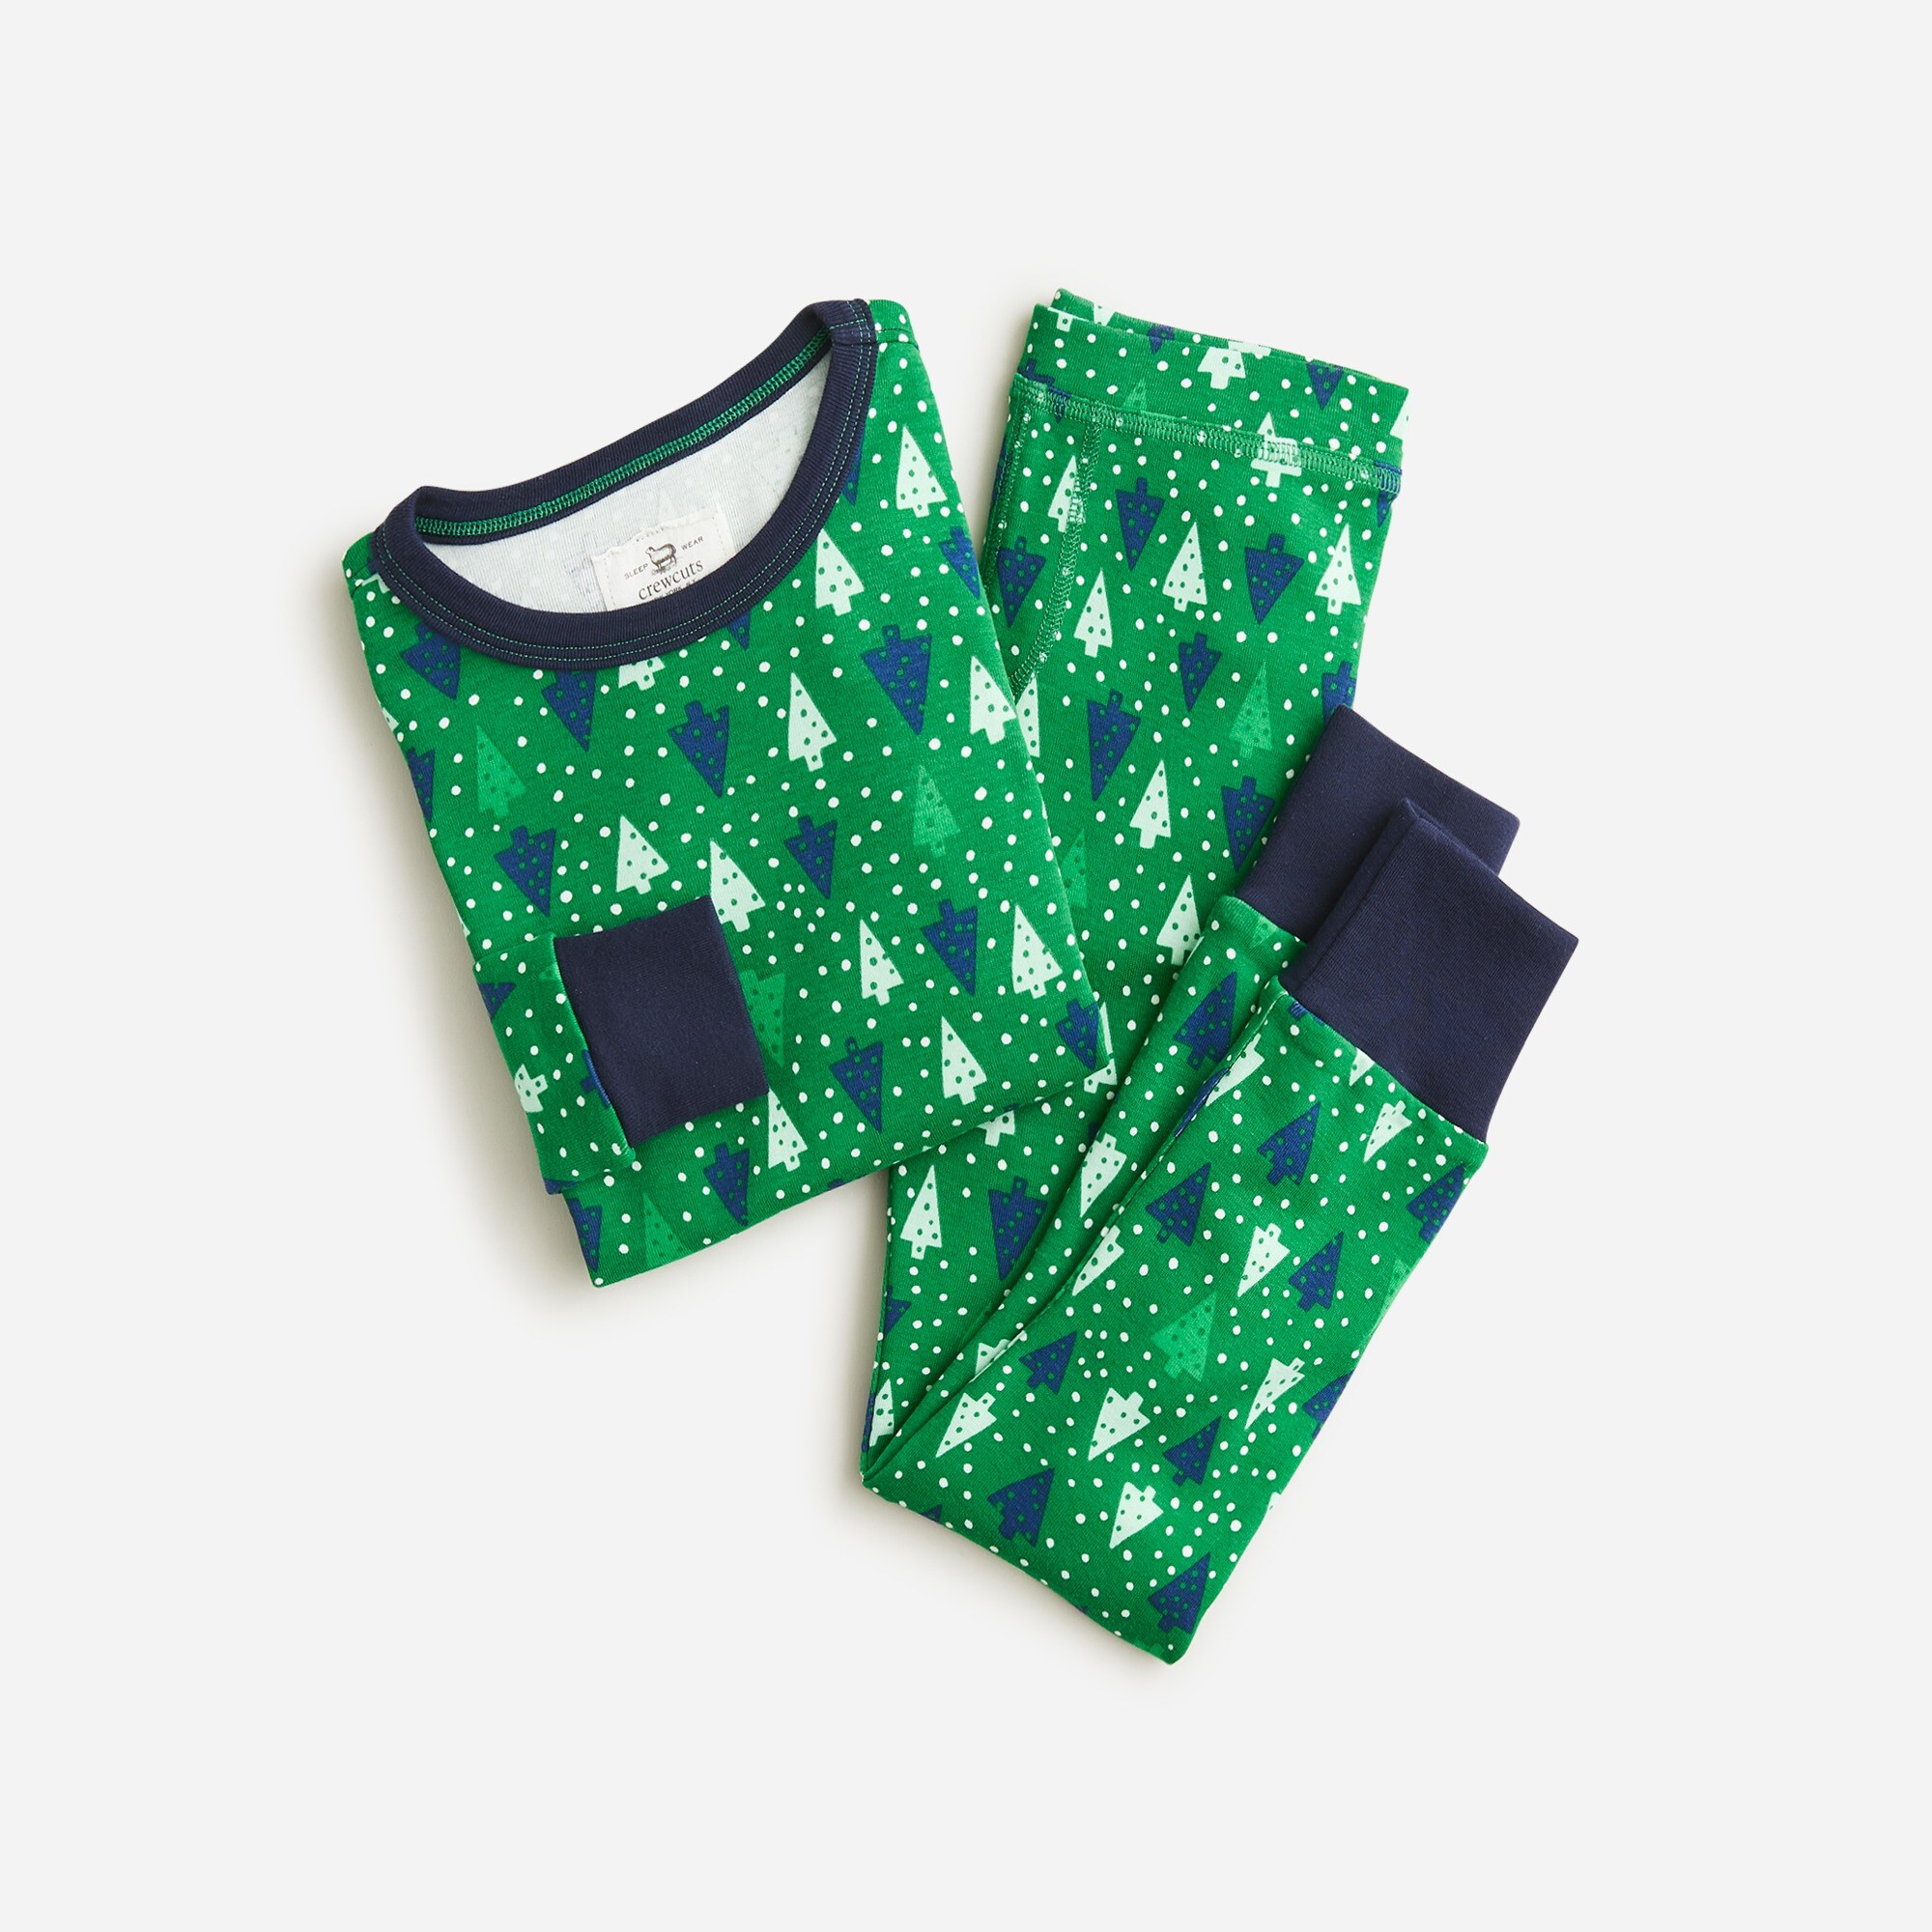  Kids' long-sleeve pajama set in prints